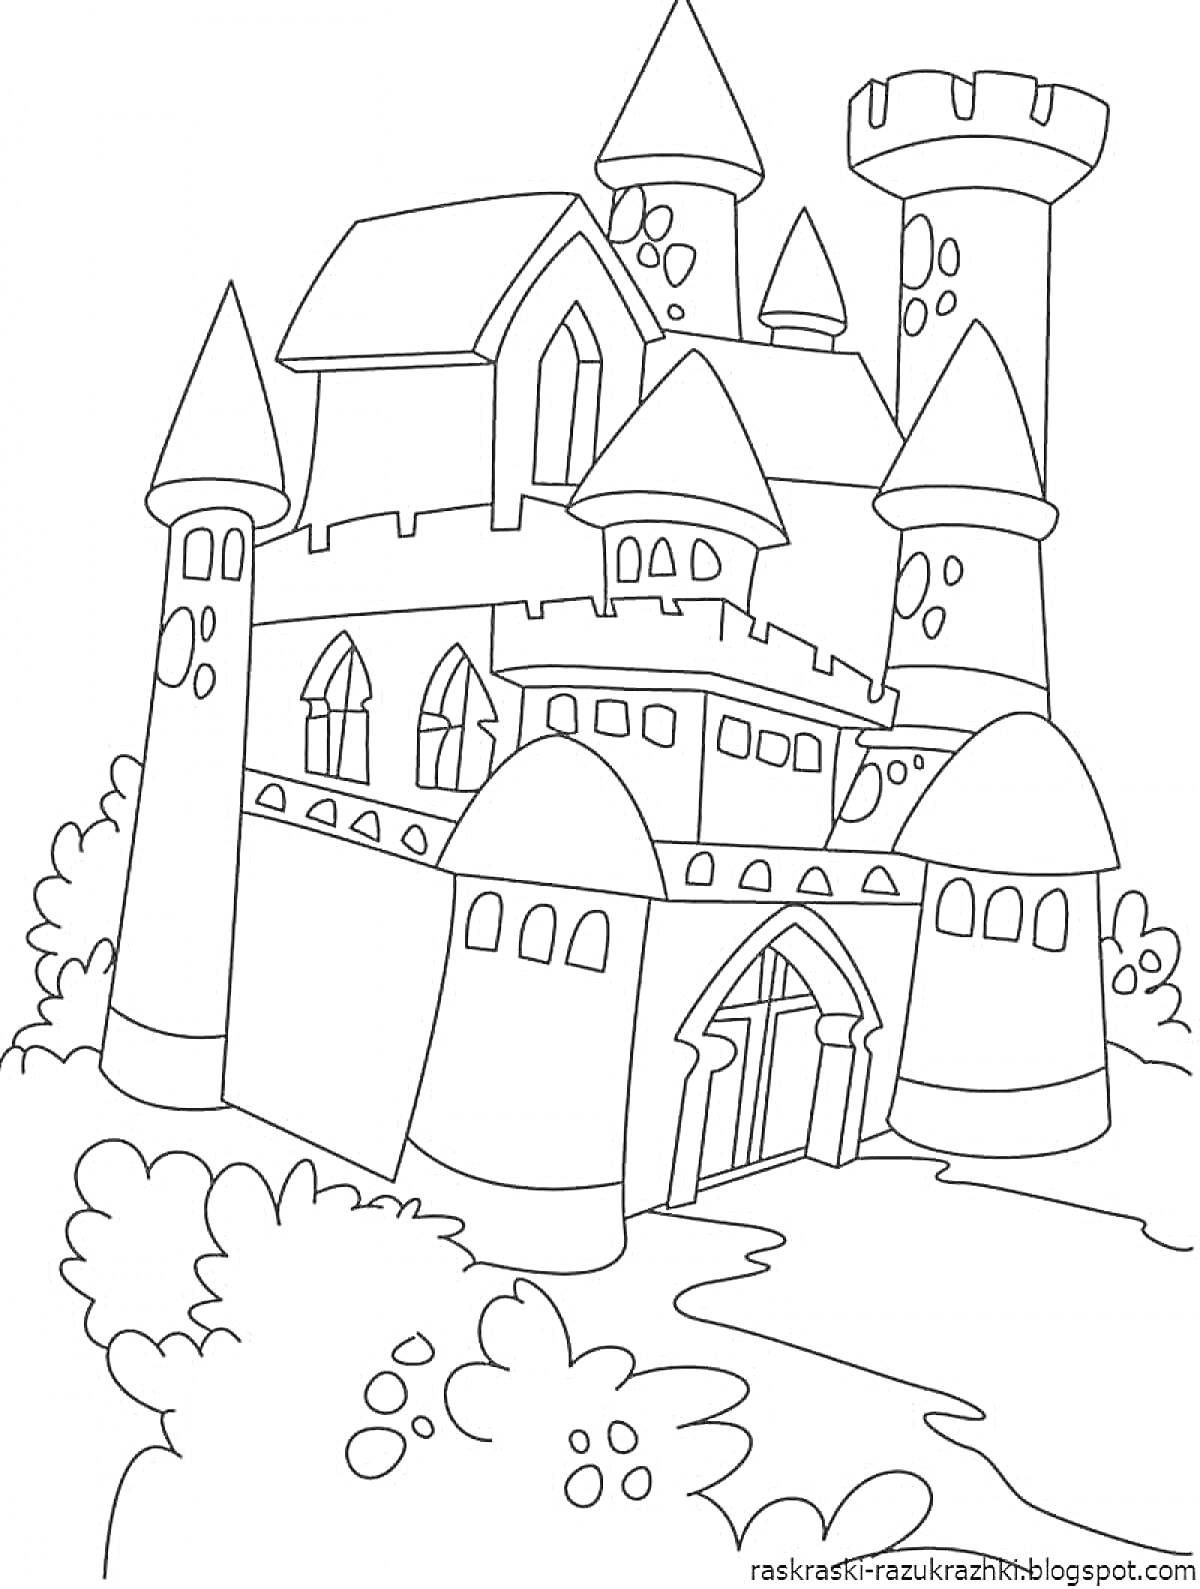 Раскраска Картинка замка с башнями, подъемным мостом, окнами и кустарником на переднем плане